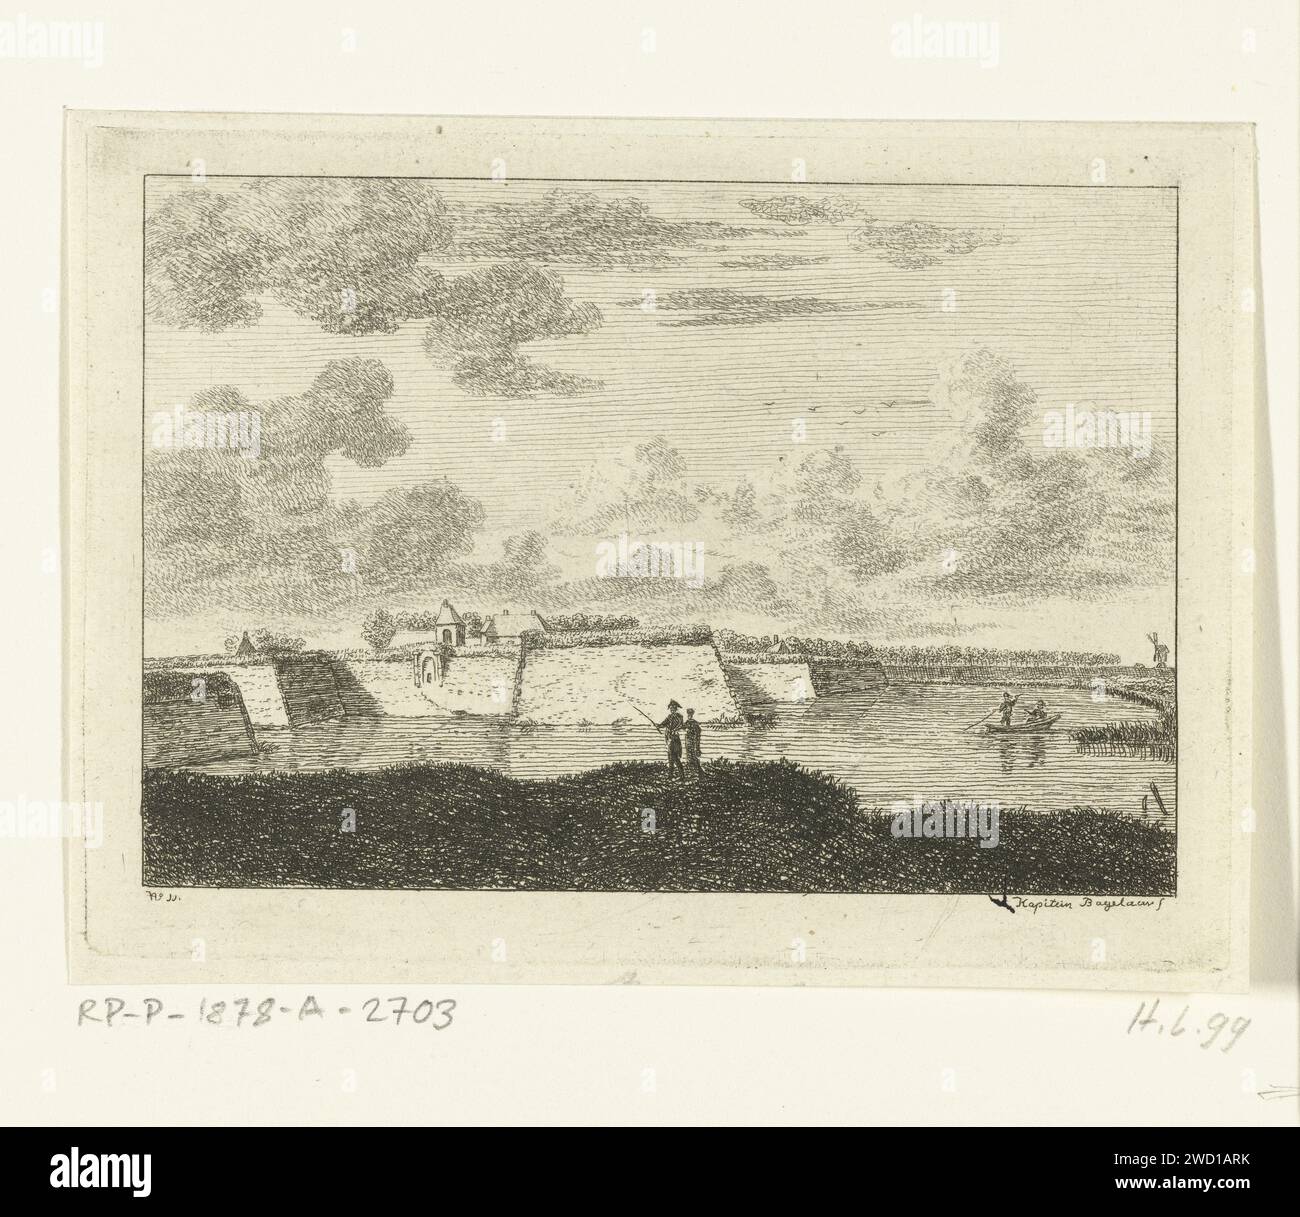 View of the ramparts in Naarden, Ernst Willem Jan Bagelaar, 1798 - 1837 print  Netherlands paper etching fortifications, military engineering Naarden Stock Photo